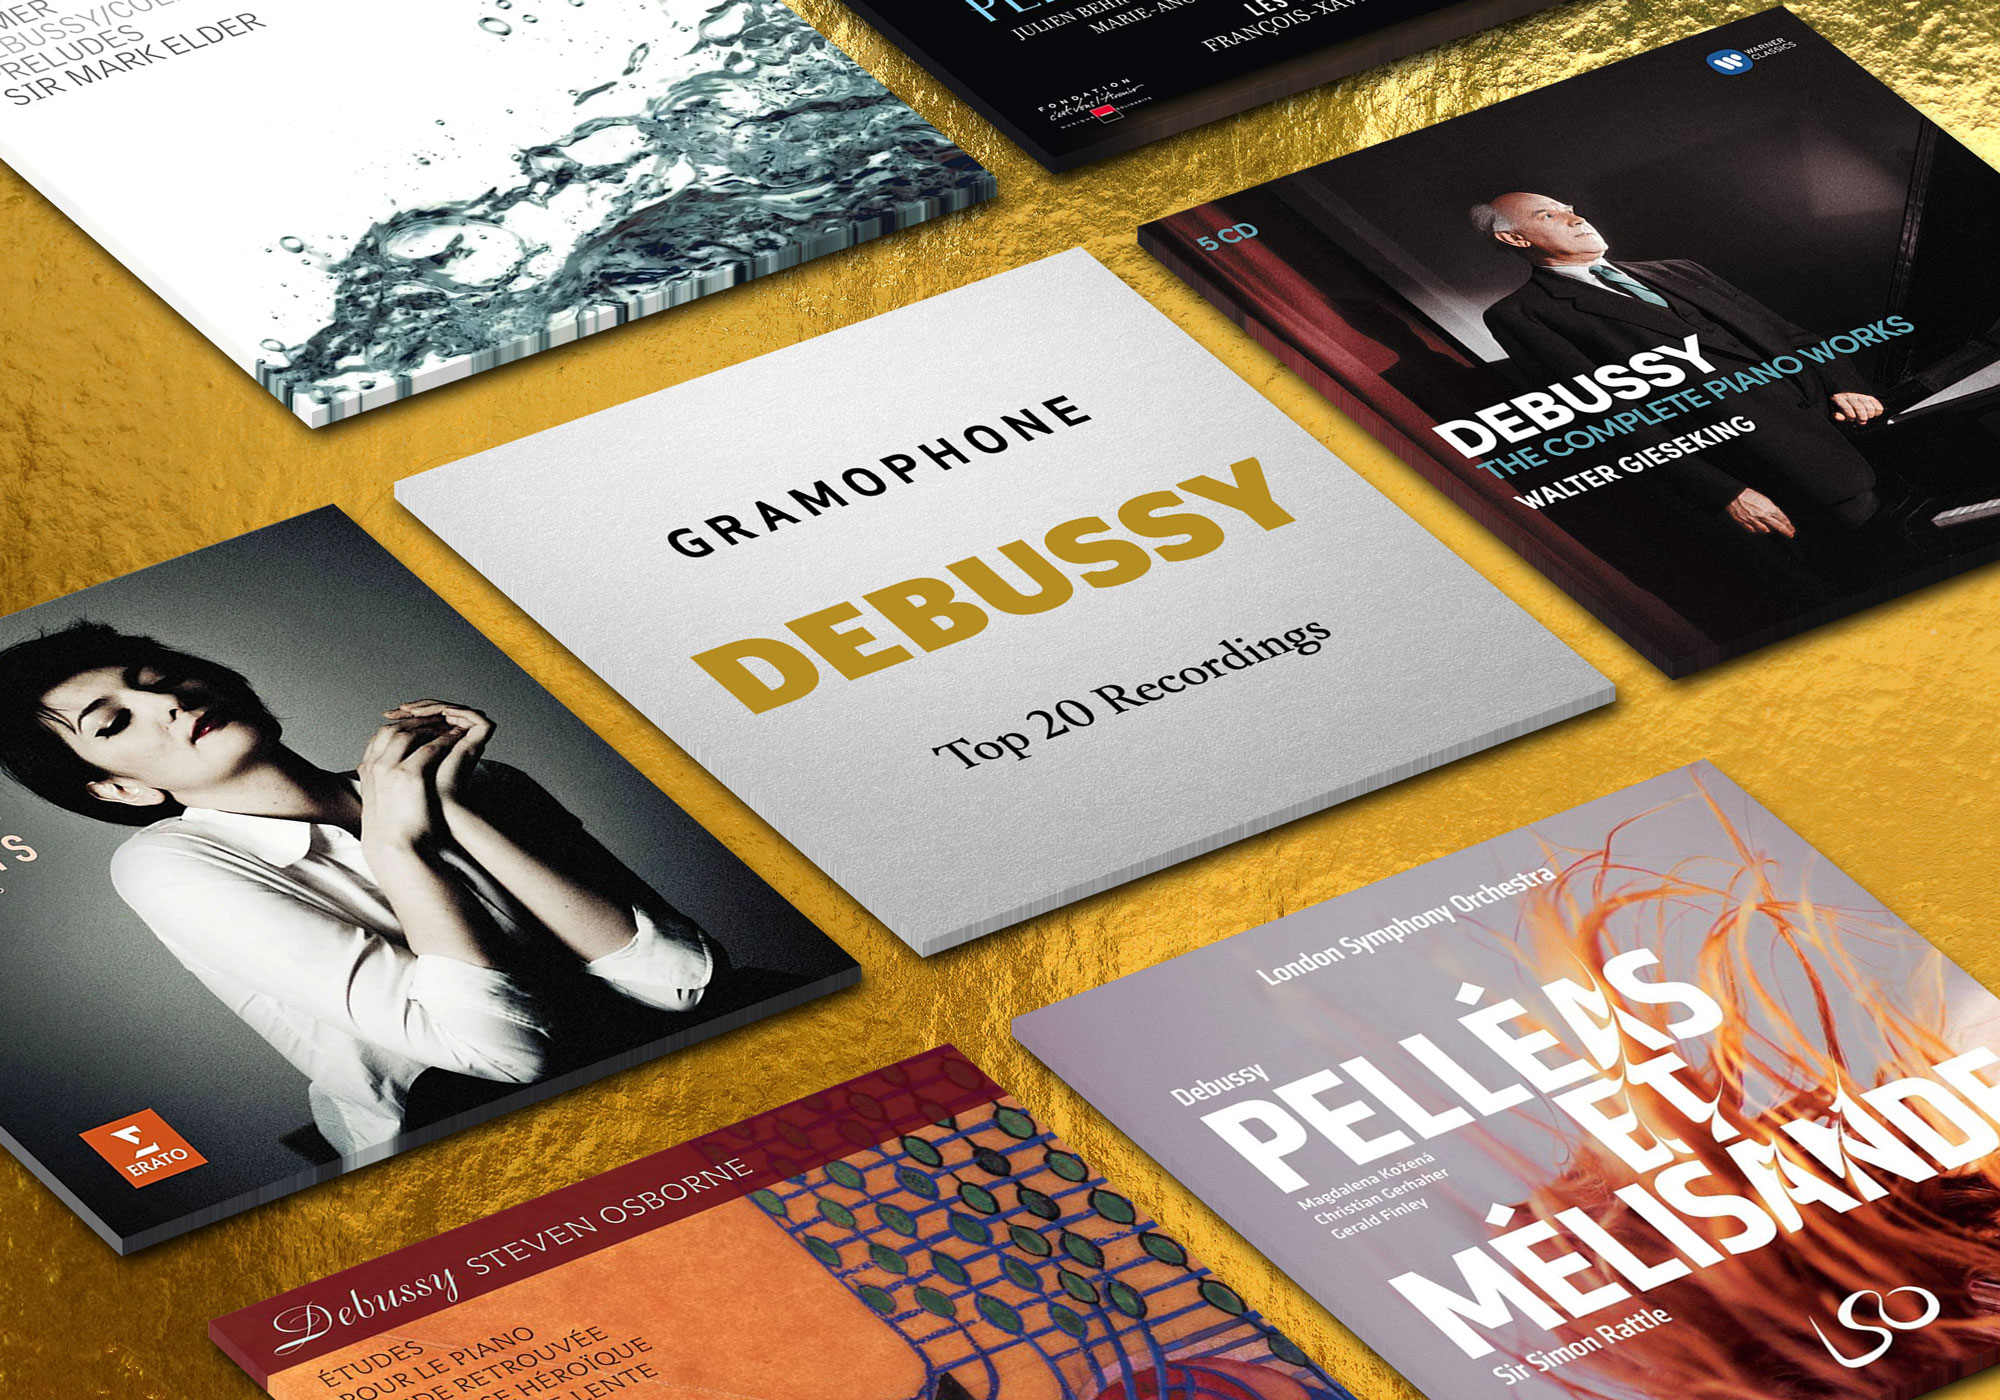 Top 20 Debussy Recordings | Gramophone